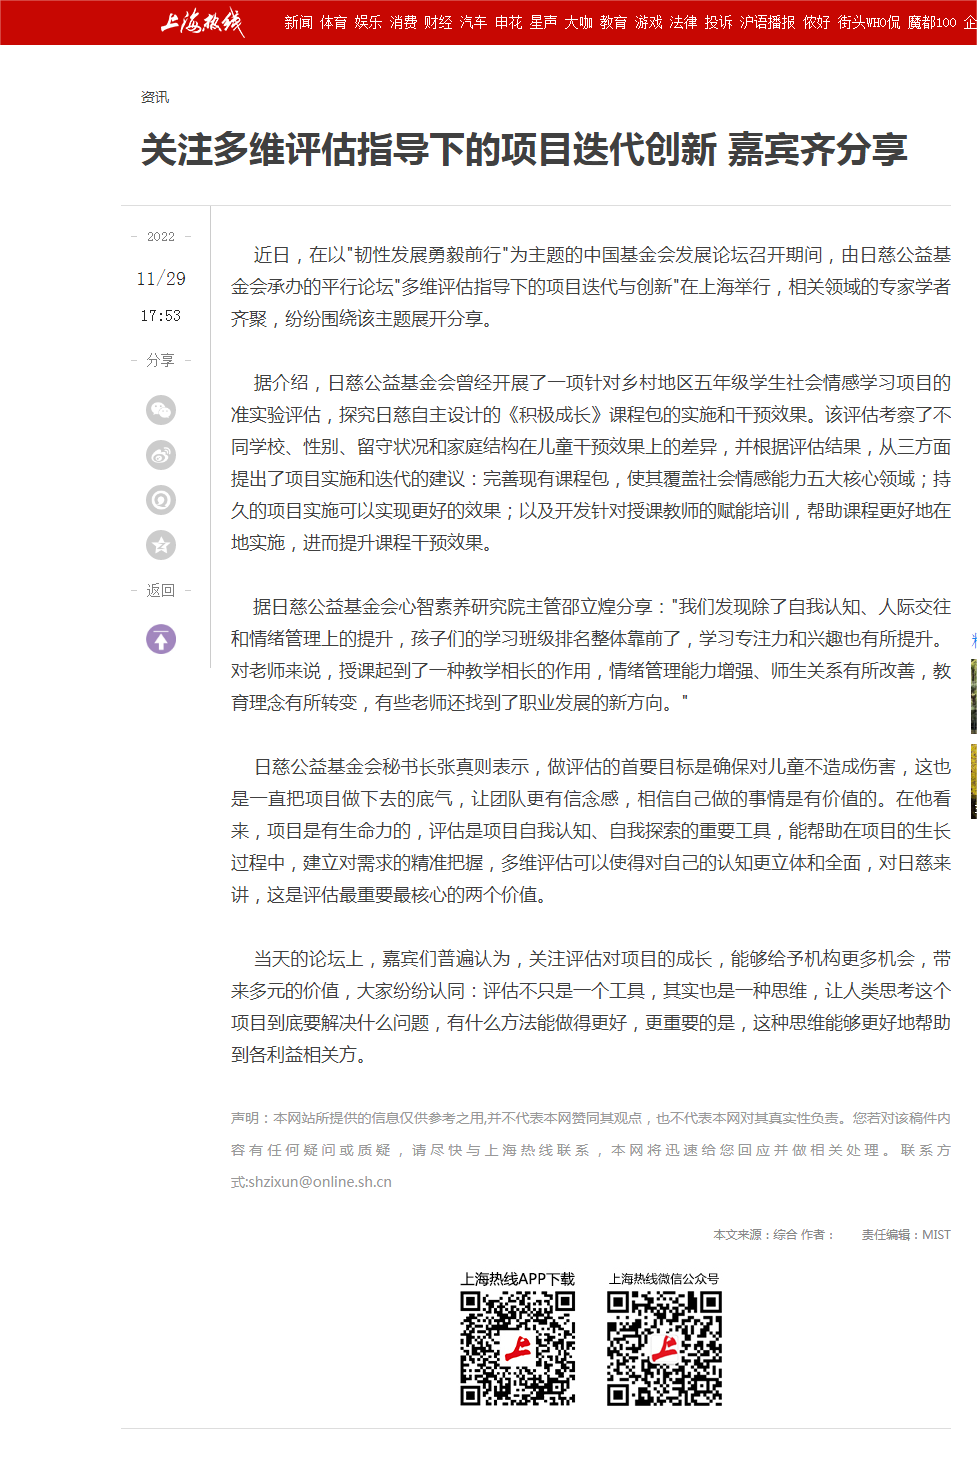 关注多维评估指导下的项目迭代创新 嘉宾齐分享——上海热线.png